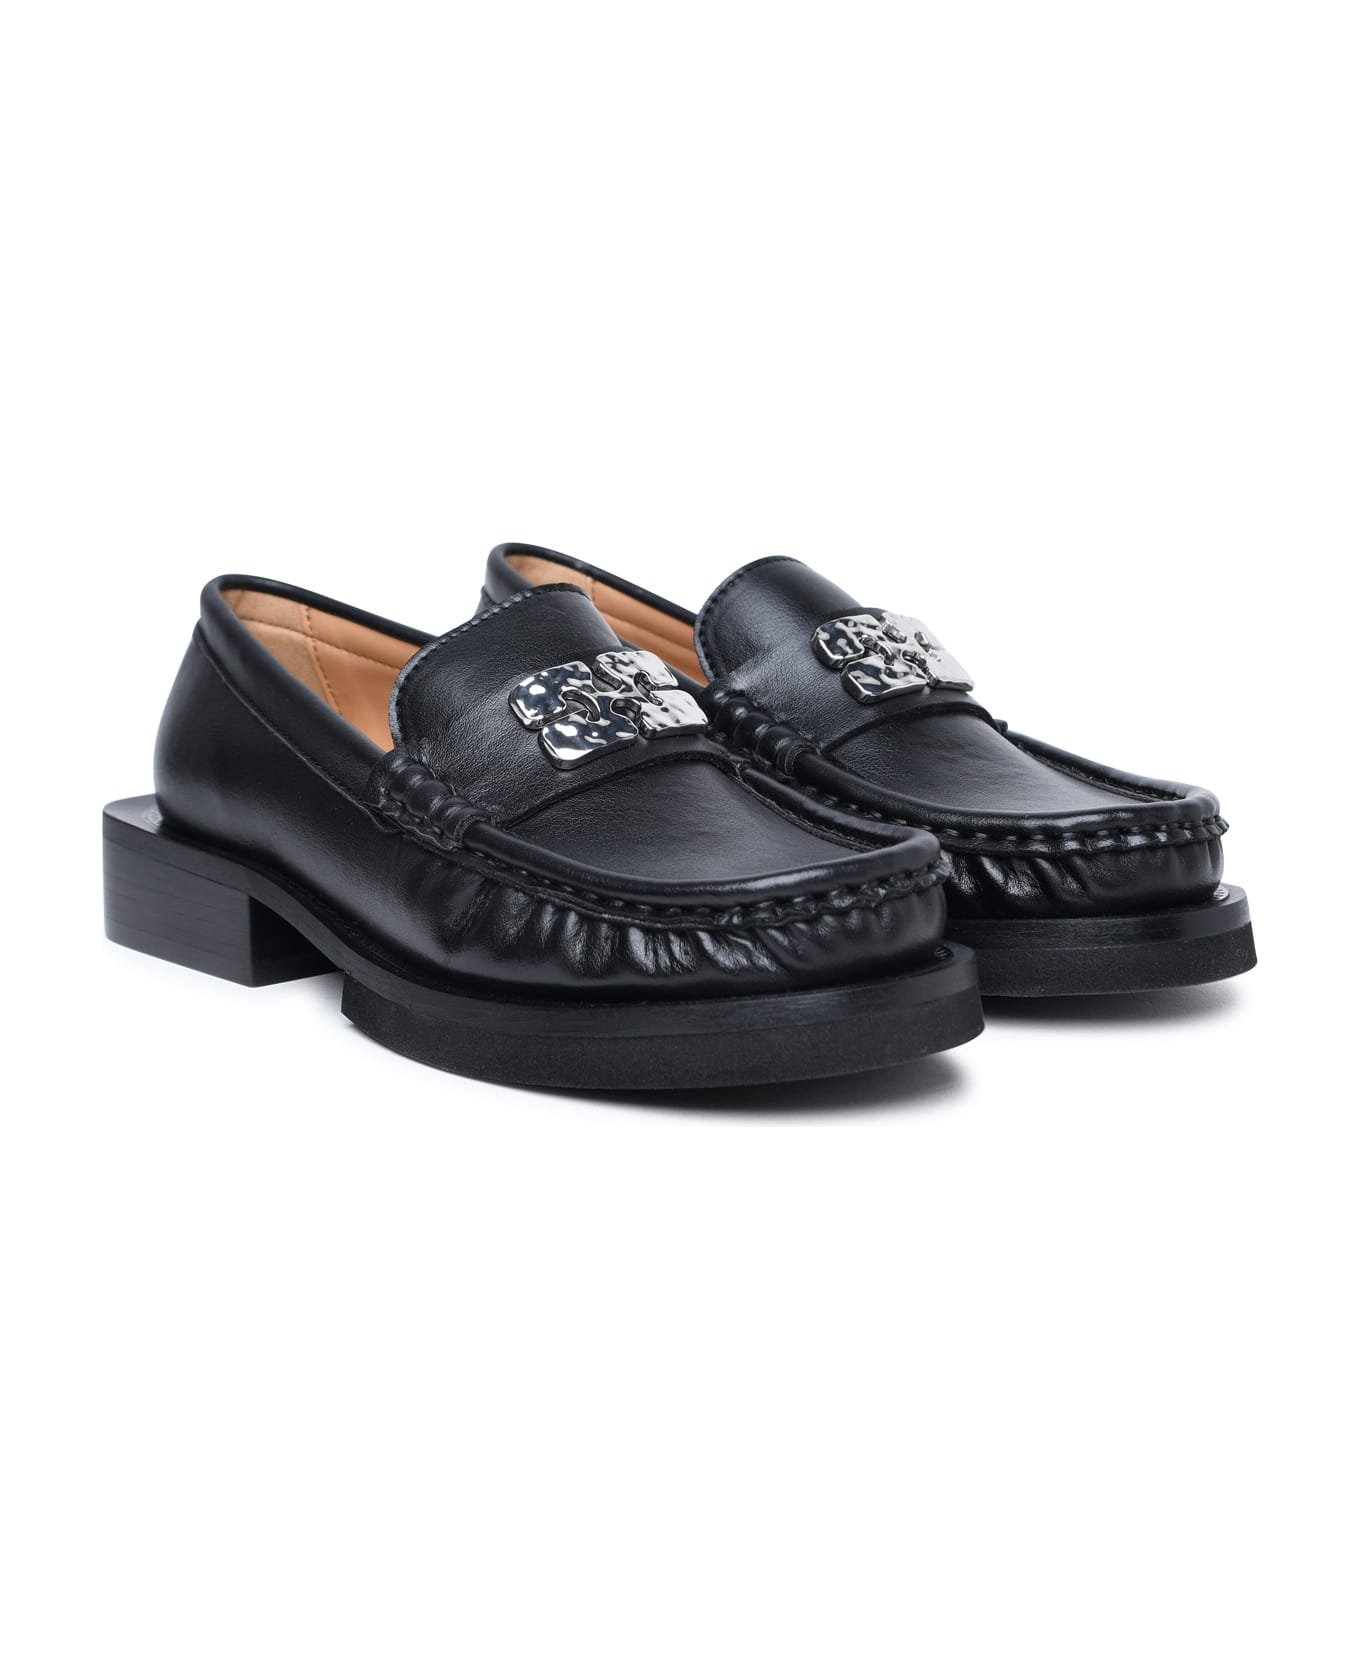 Ganni Black Leather Loafers - Black フラットシューズ